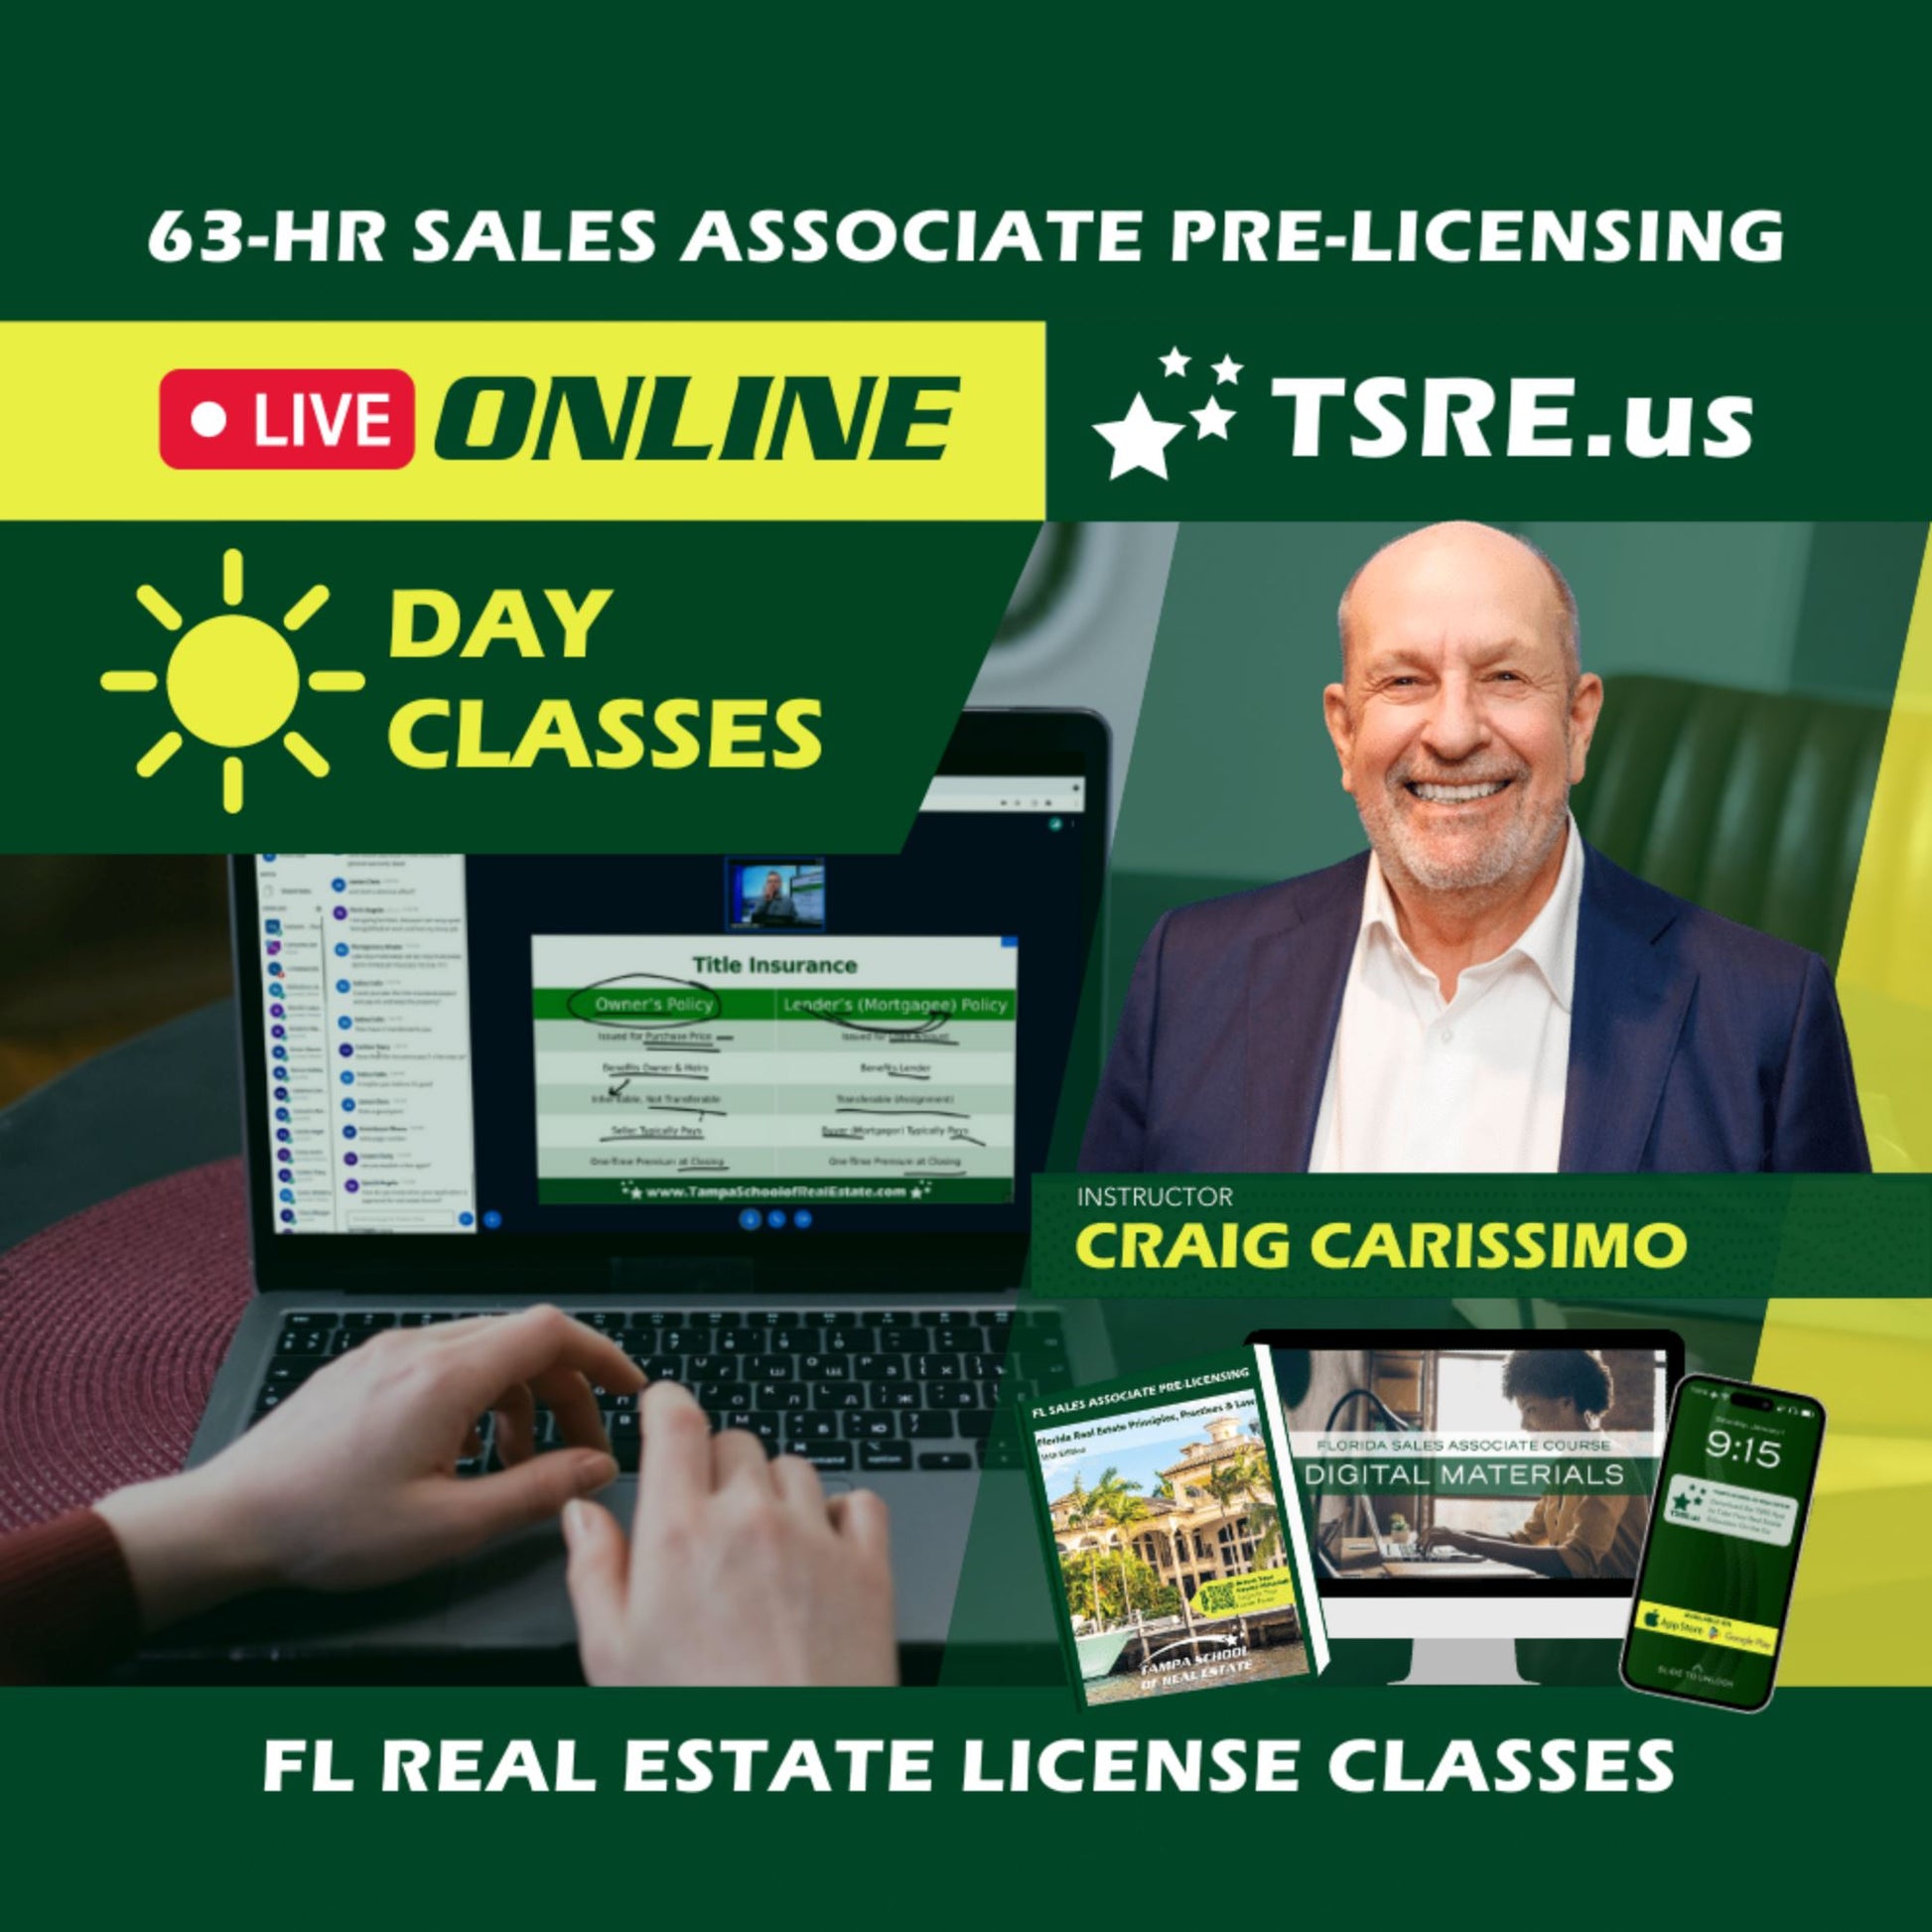 LIVE Online | Apr 22 9:15am | 63-HR FL Real Estate Classes SLPRE TSRE LIVE Online | Tampa School of Real Estate 